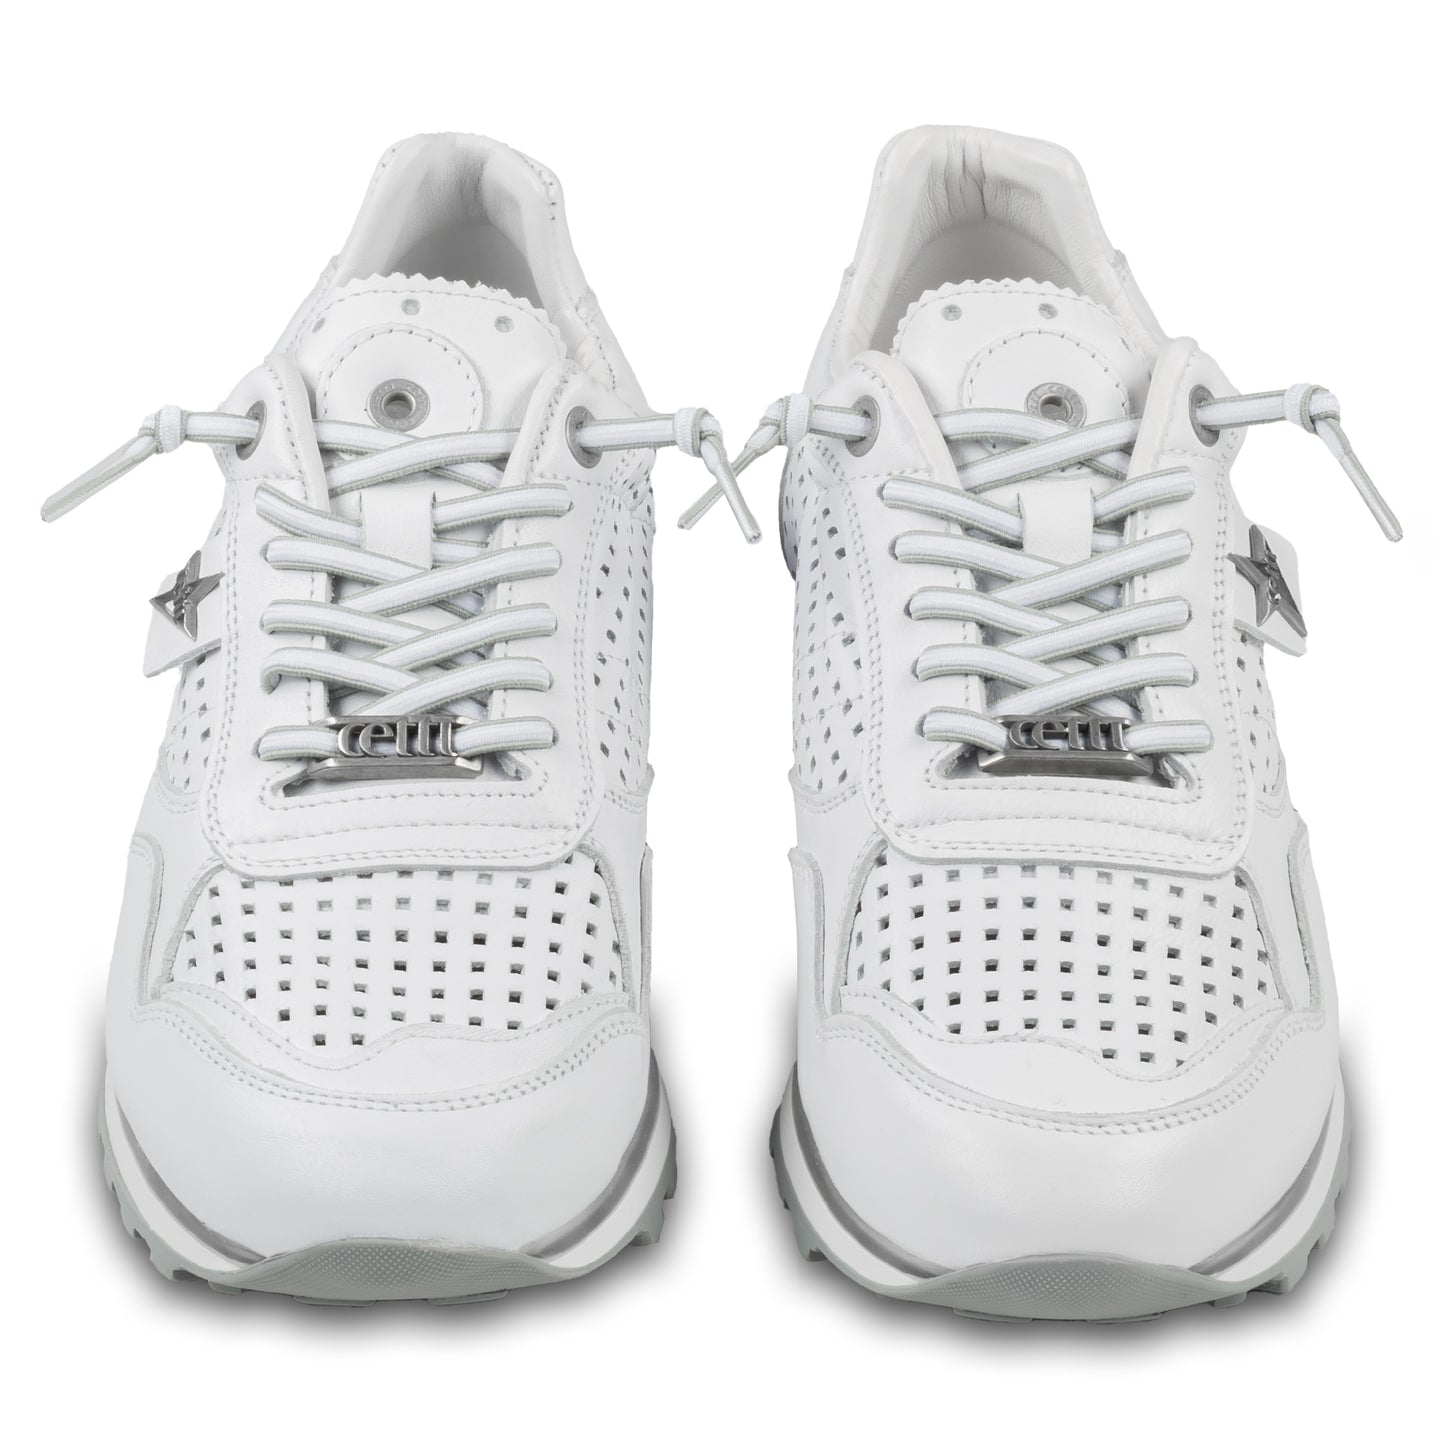 CETTI Herren Leder Sneaker, Modell „C848“ in weiß (nature blanco), Made in Spain. Ansicht der Ferse und Sohlenunterseite. Paarweise Ansicht von vorne.  